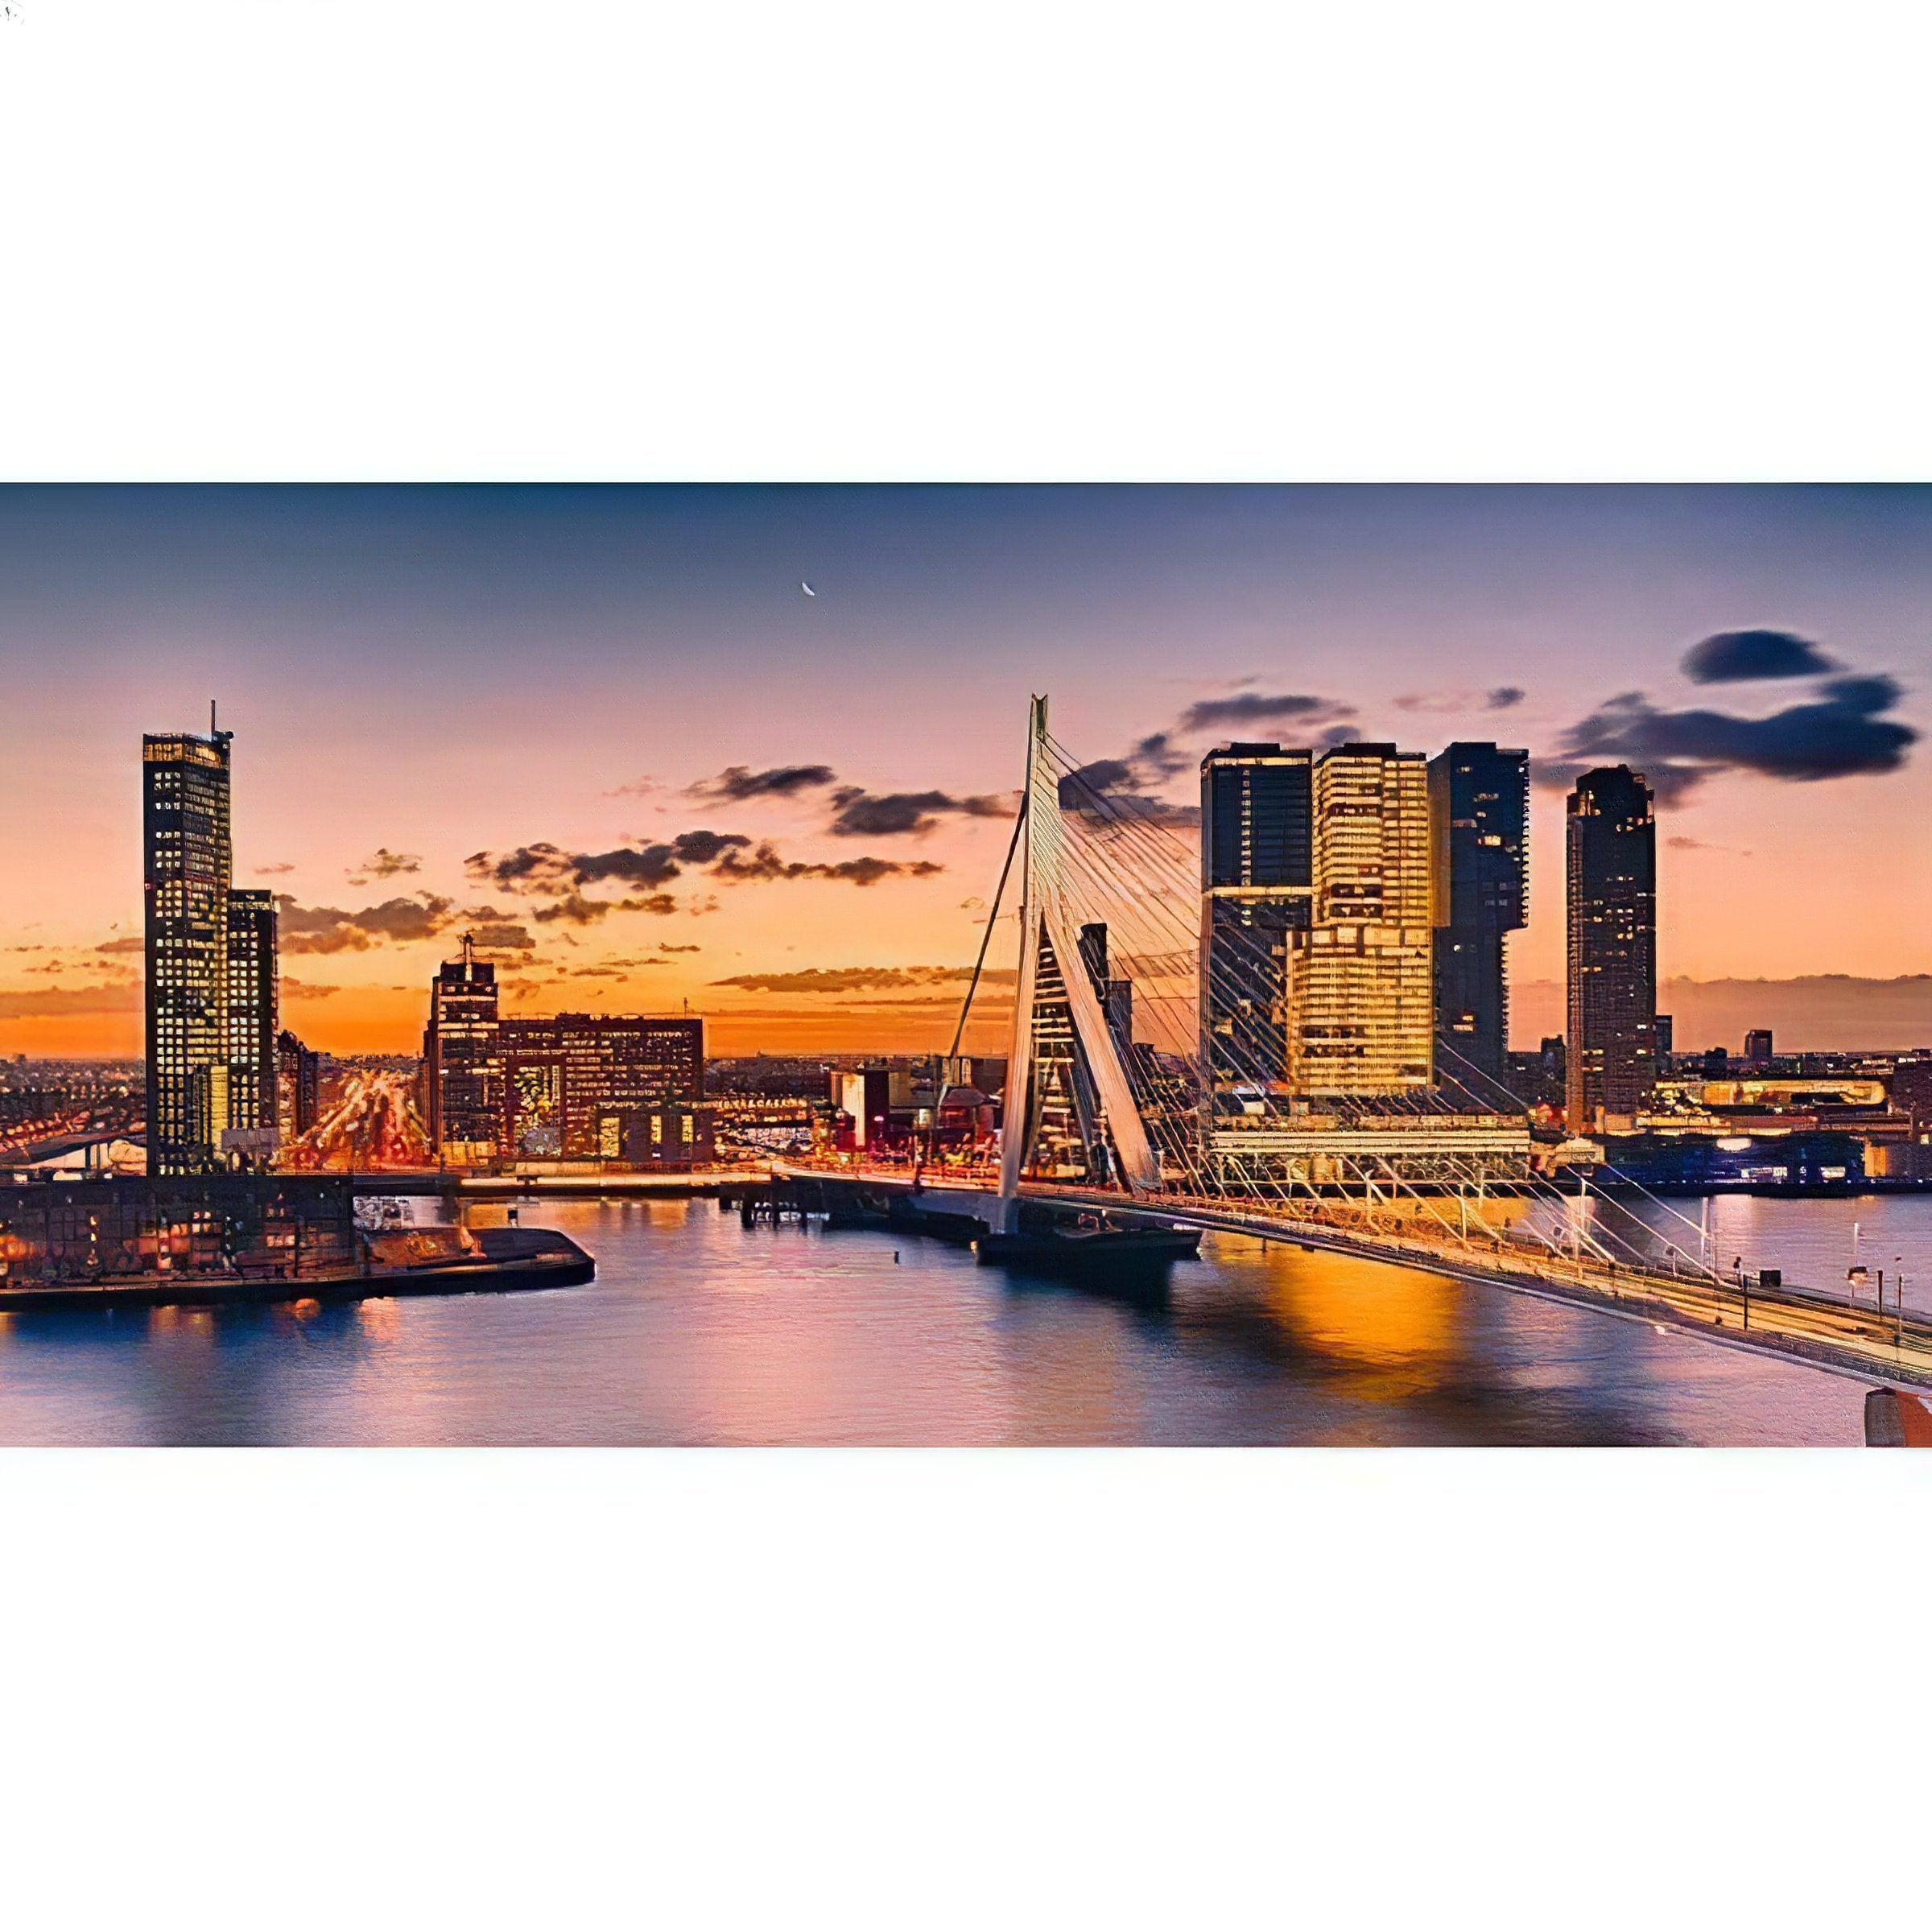 Modern engineering meets art in the iconic Bridge of Rotterdam's striking silhouette. Bridge Of Rotterdam - Diamondartlove